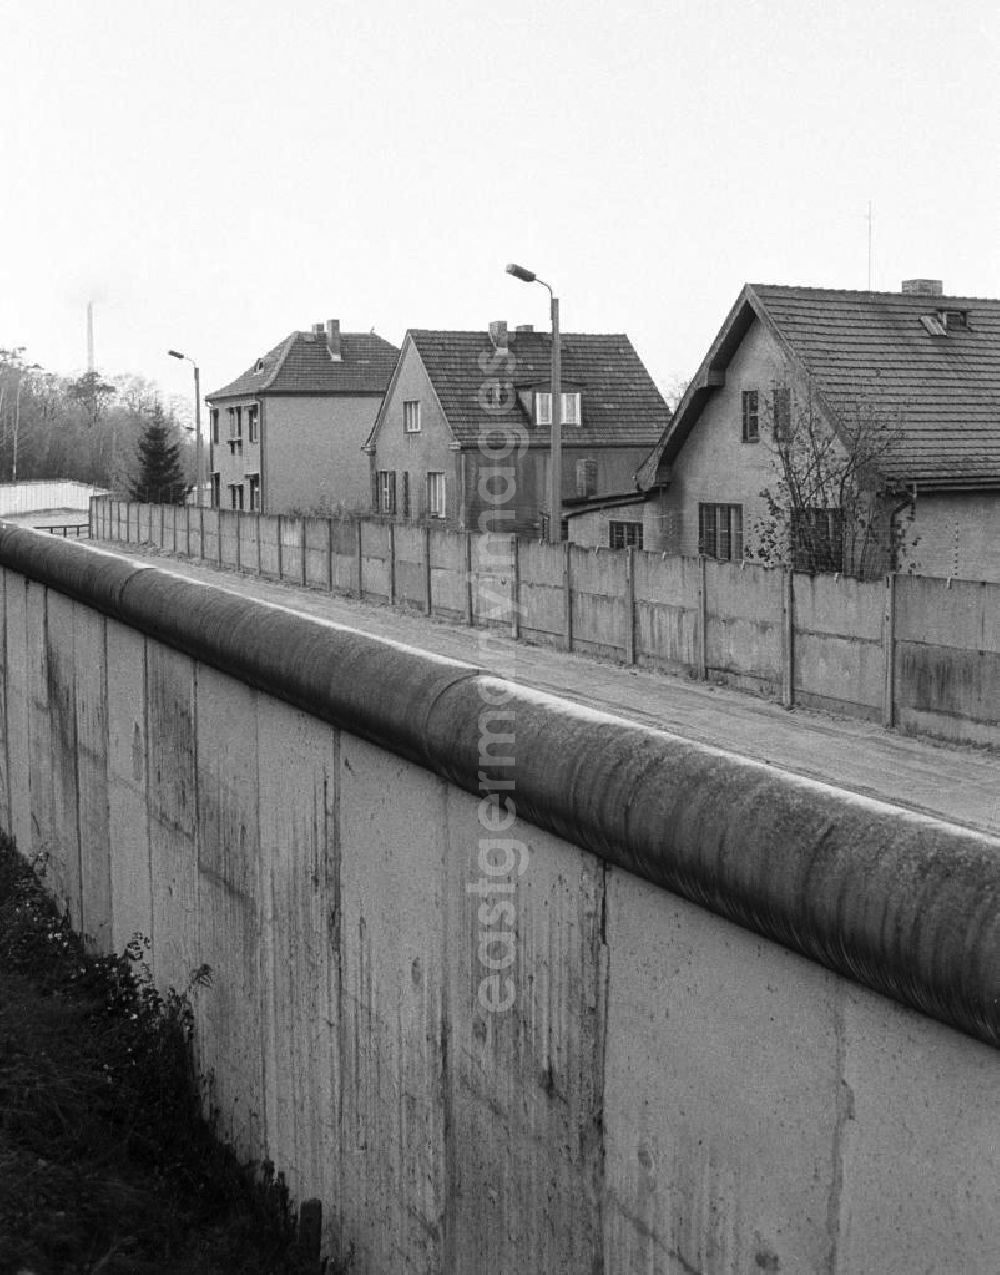 GDR photo archive: Hohen Neundorf - Blick vom Mauerstreifen / die Mauer auf Einfamilienhäuser der Grenzgemeinde Stolpe.